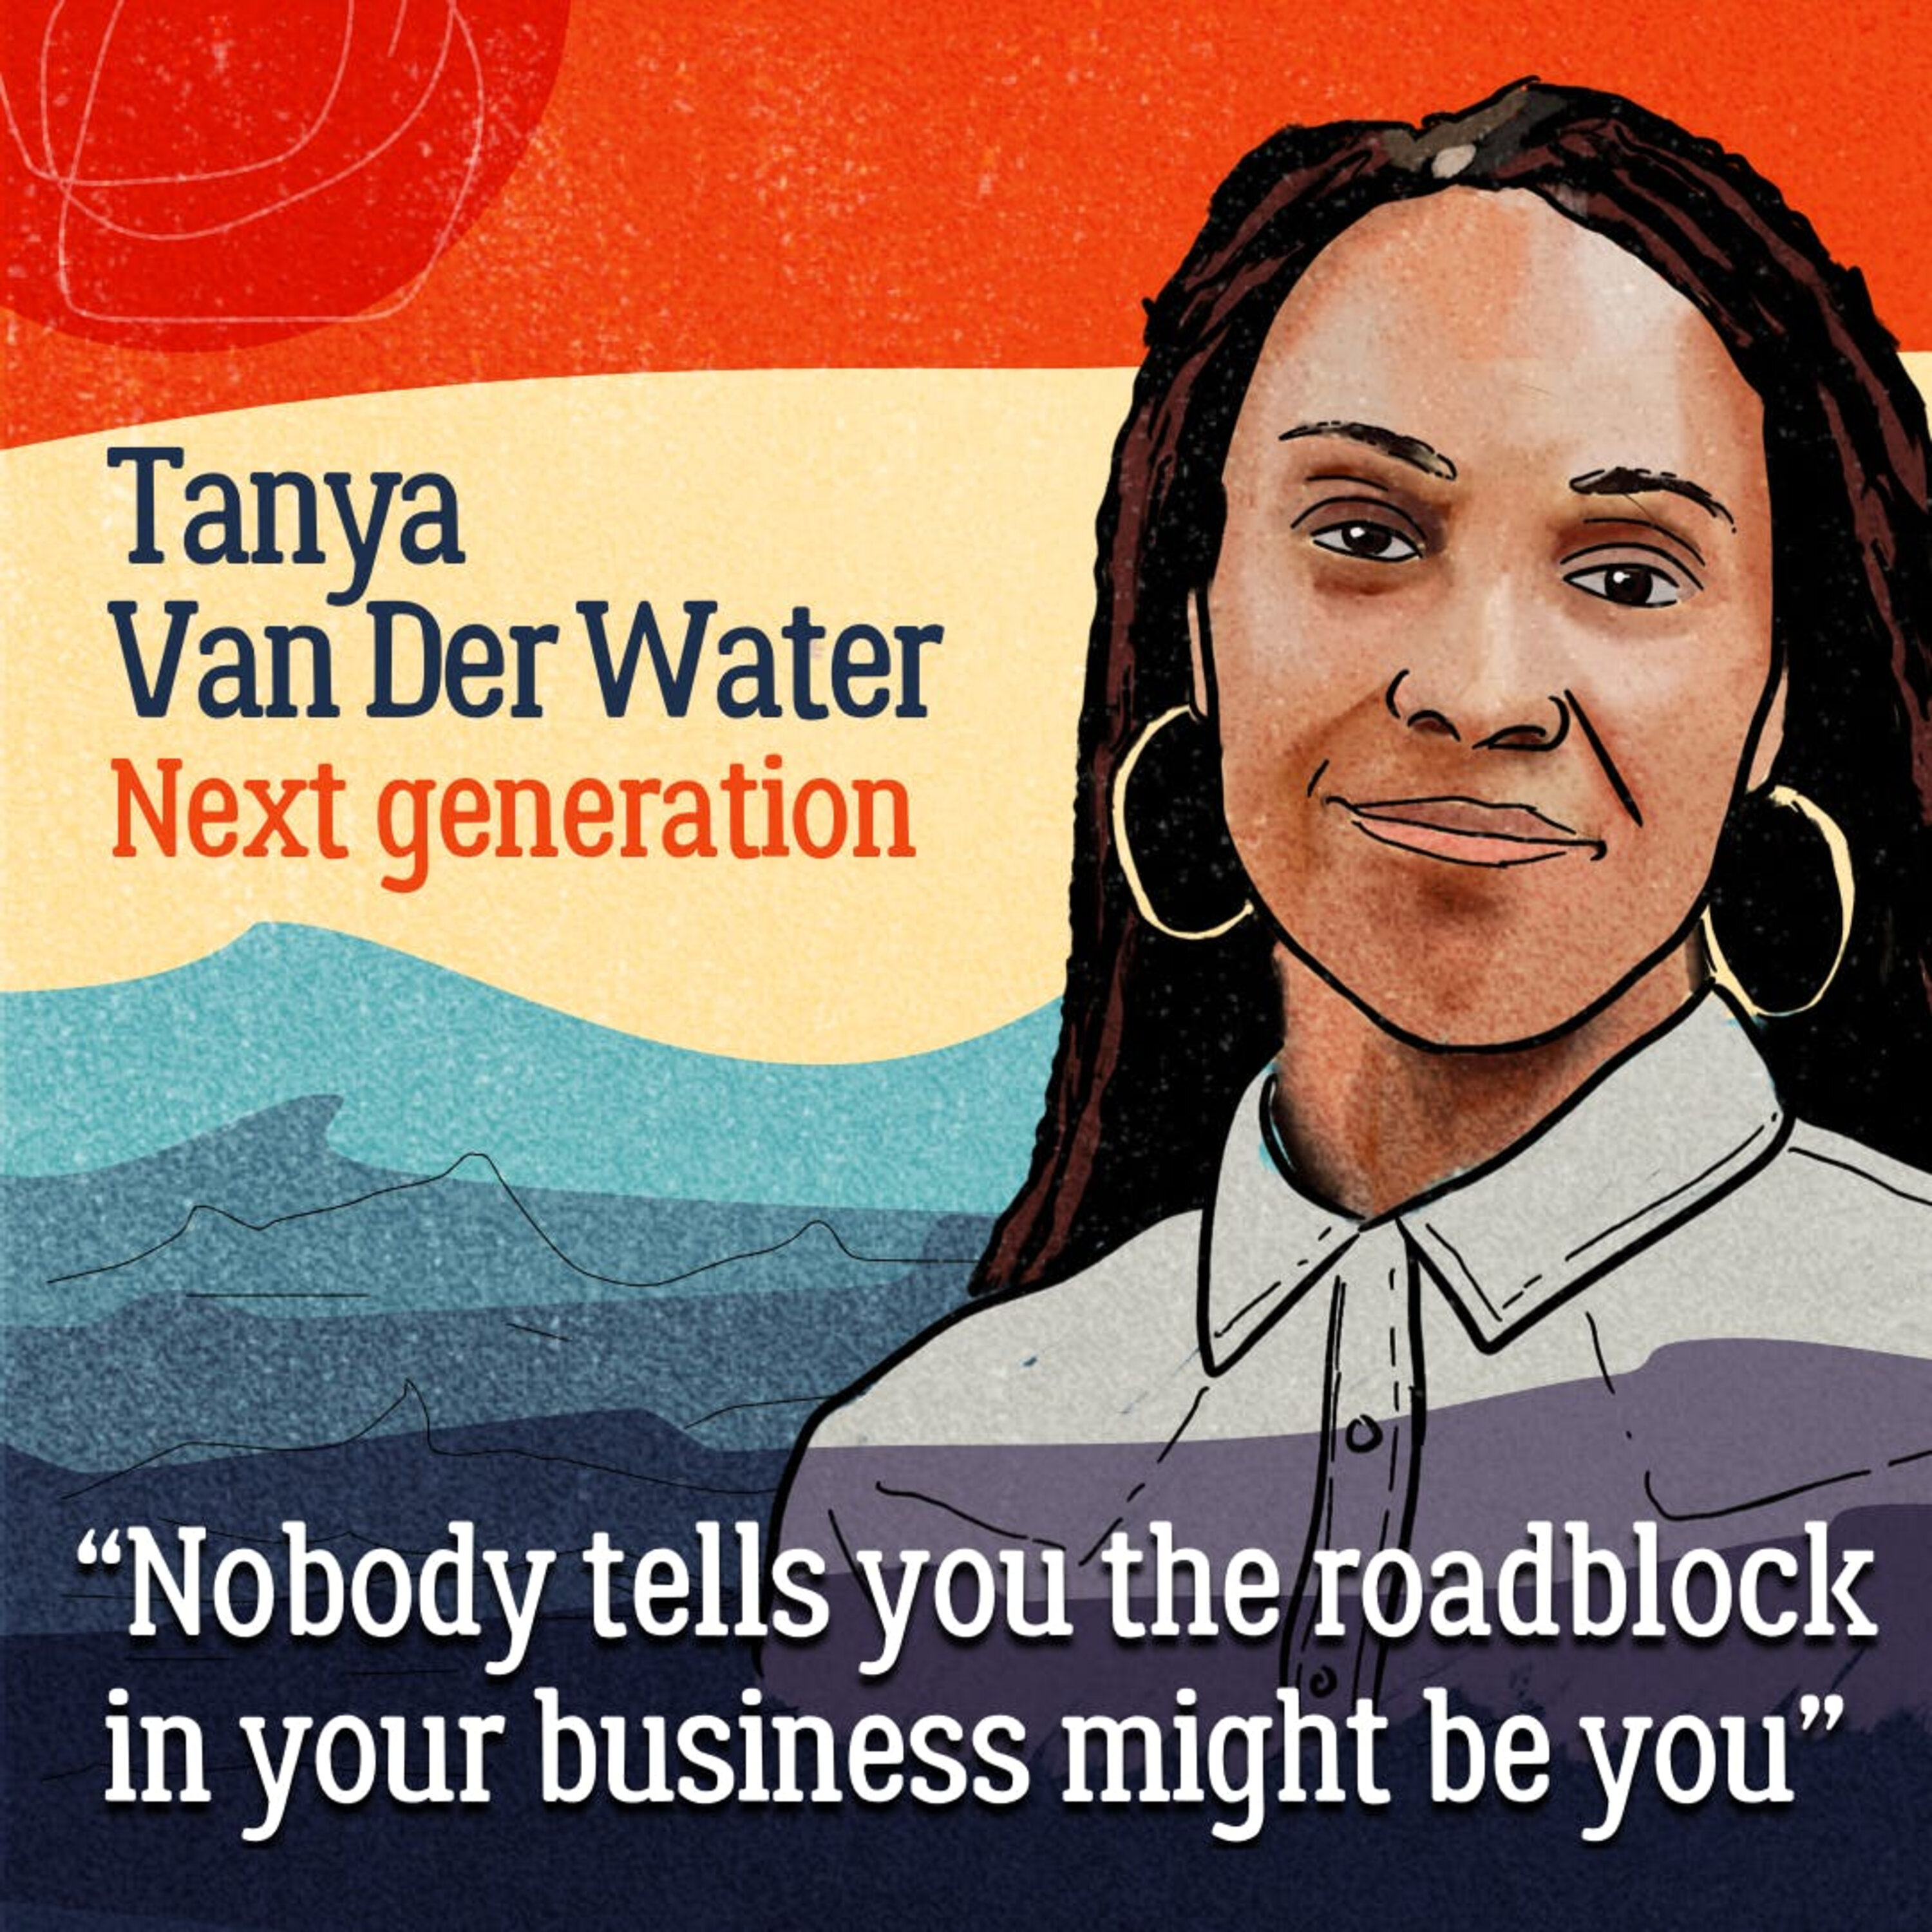 New buckaroo – Tanya Van Der Water redefines success for her family business